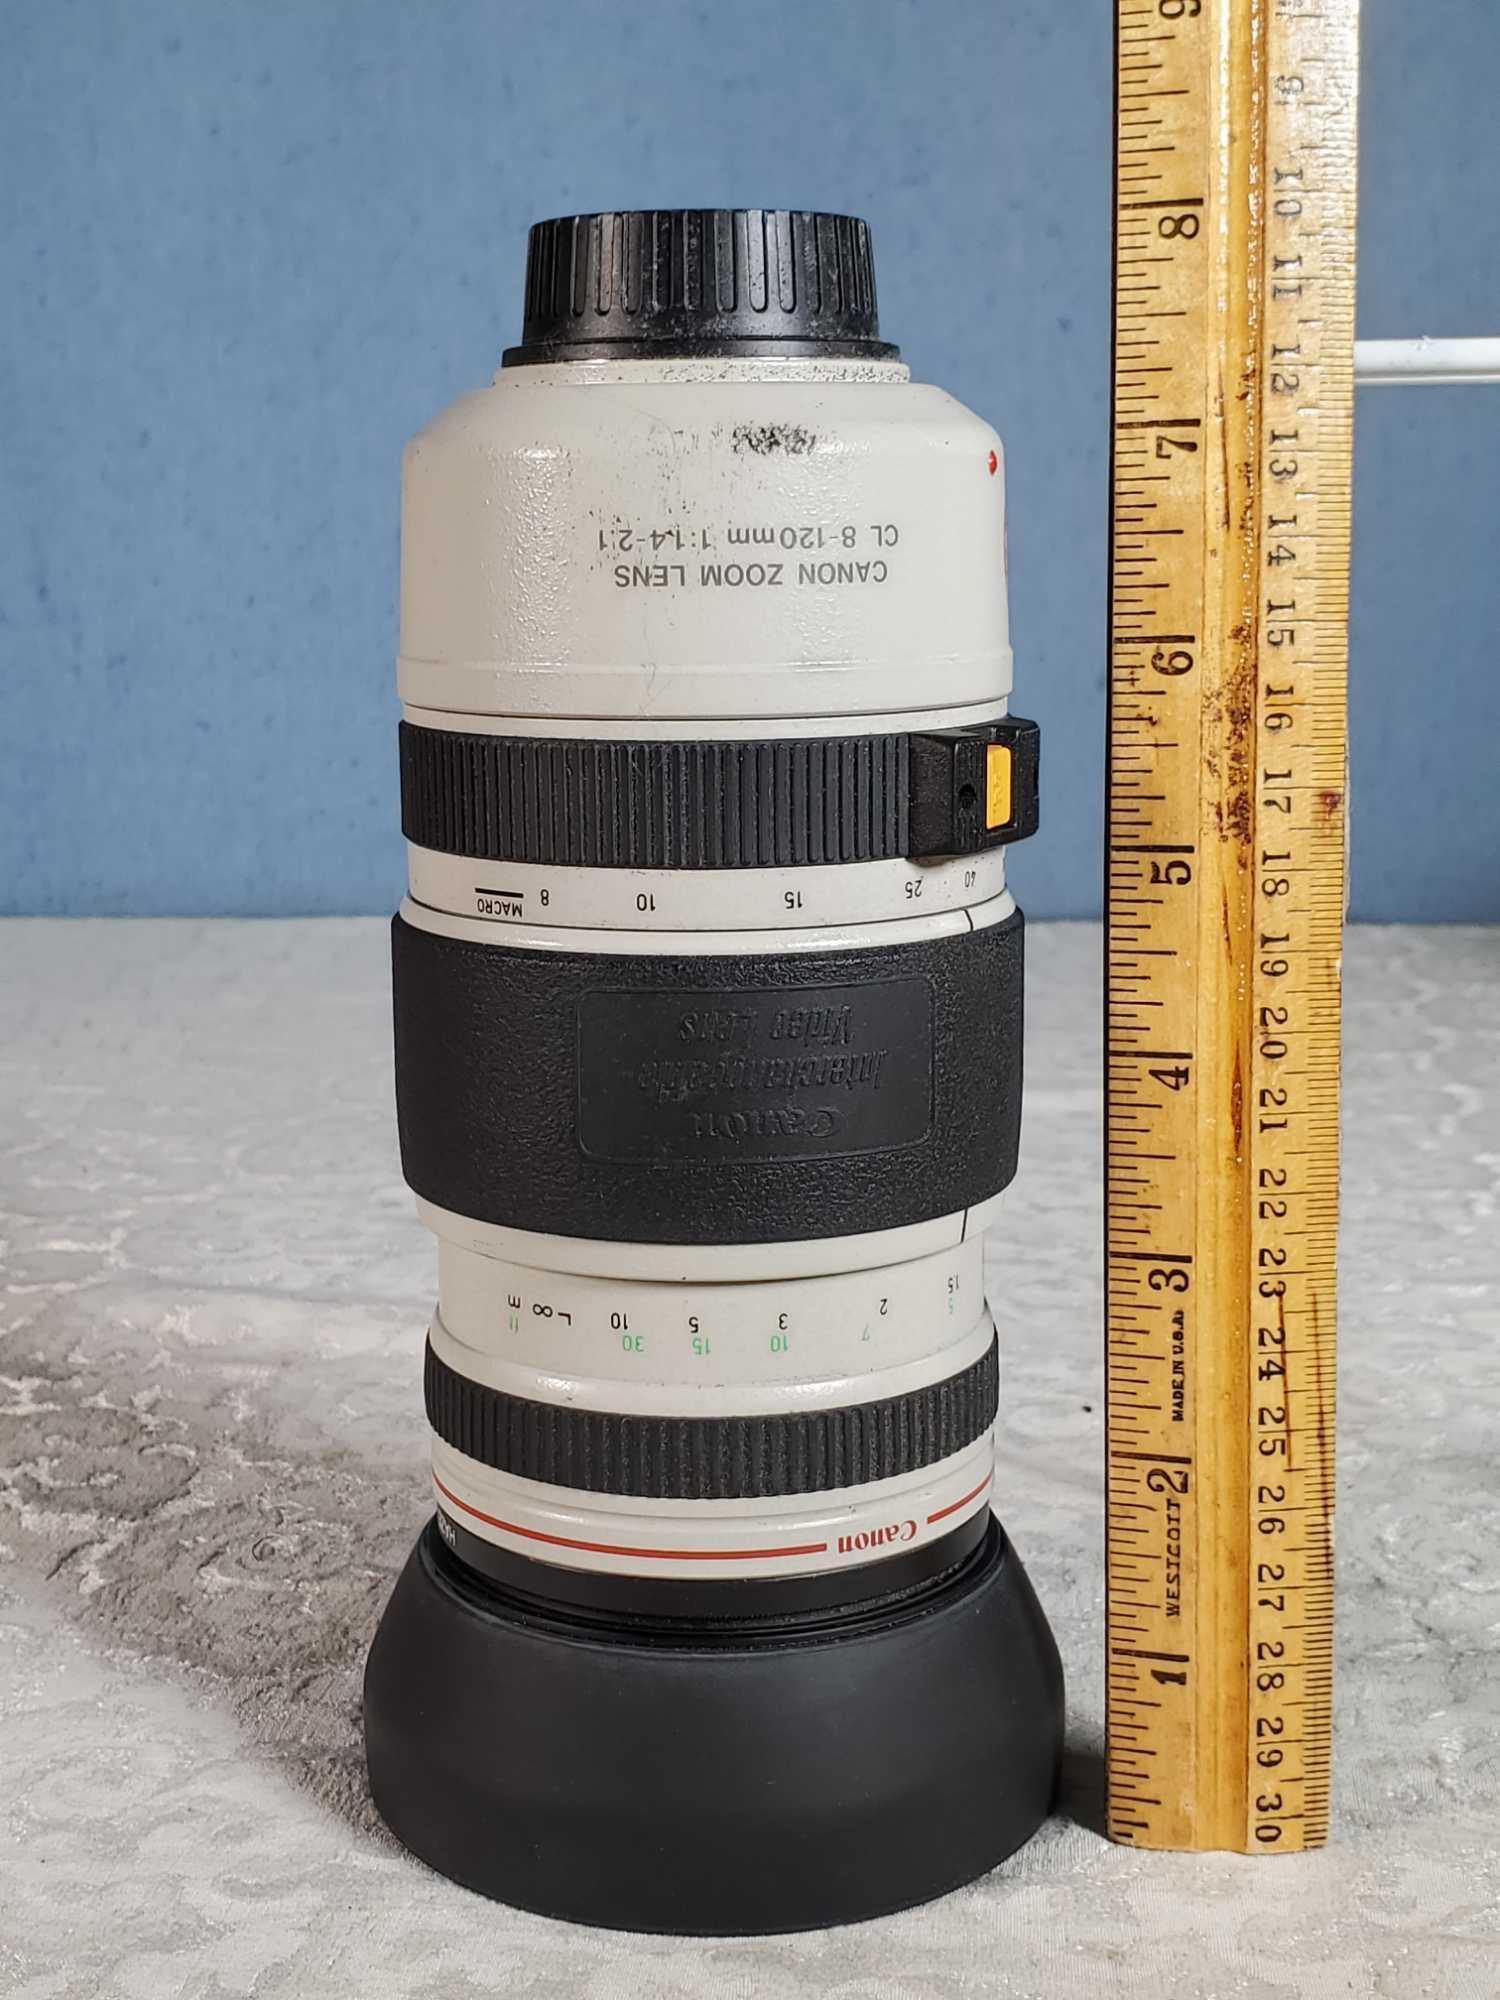 4D Magic Super135-38 Lenticular Camera and Canon Zoom VideoLens